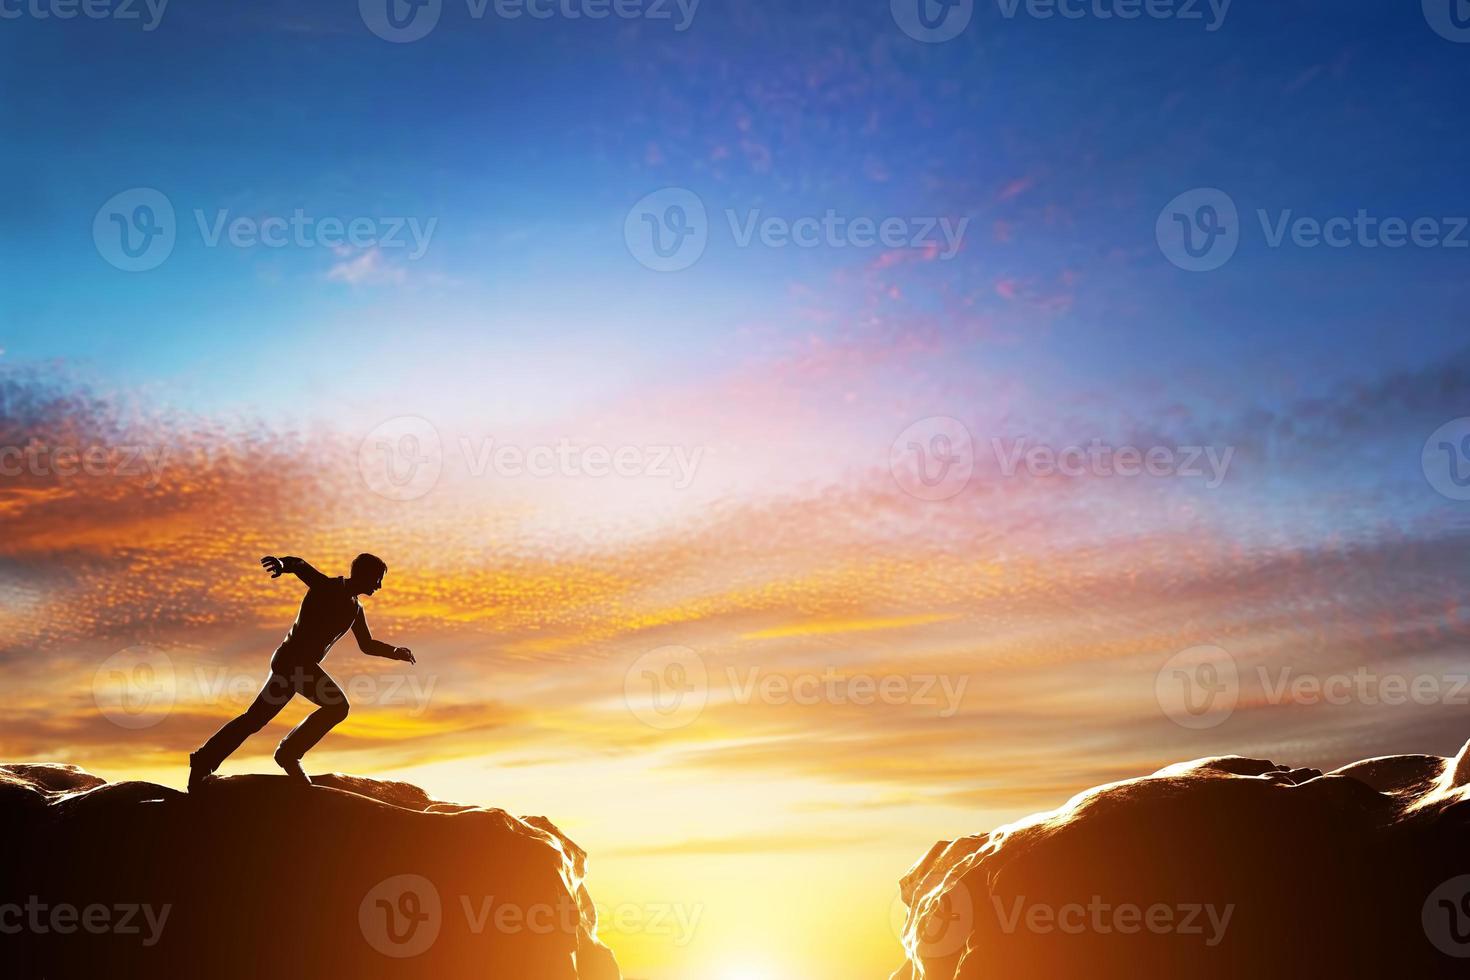 homem correndo rápido para saltar sobre o precipício entre duas montanhas. desafio foto